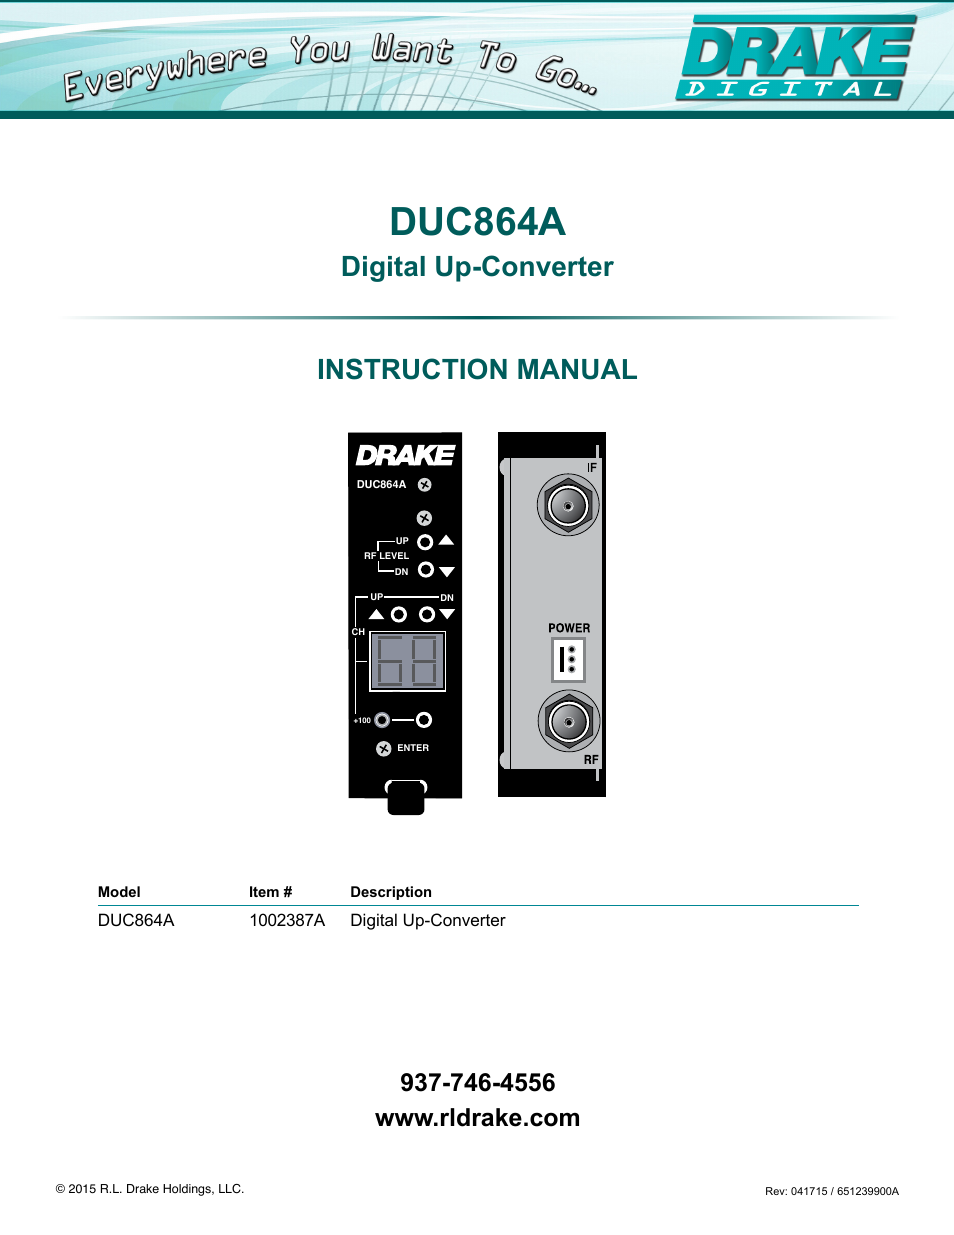 DUC864A Digital Up-Converter